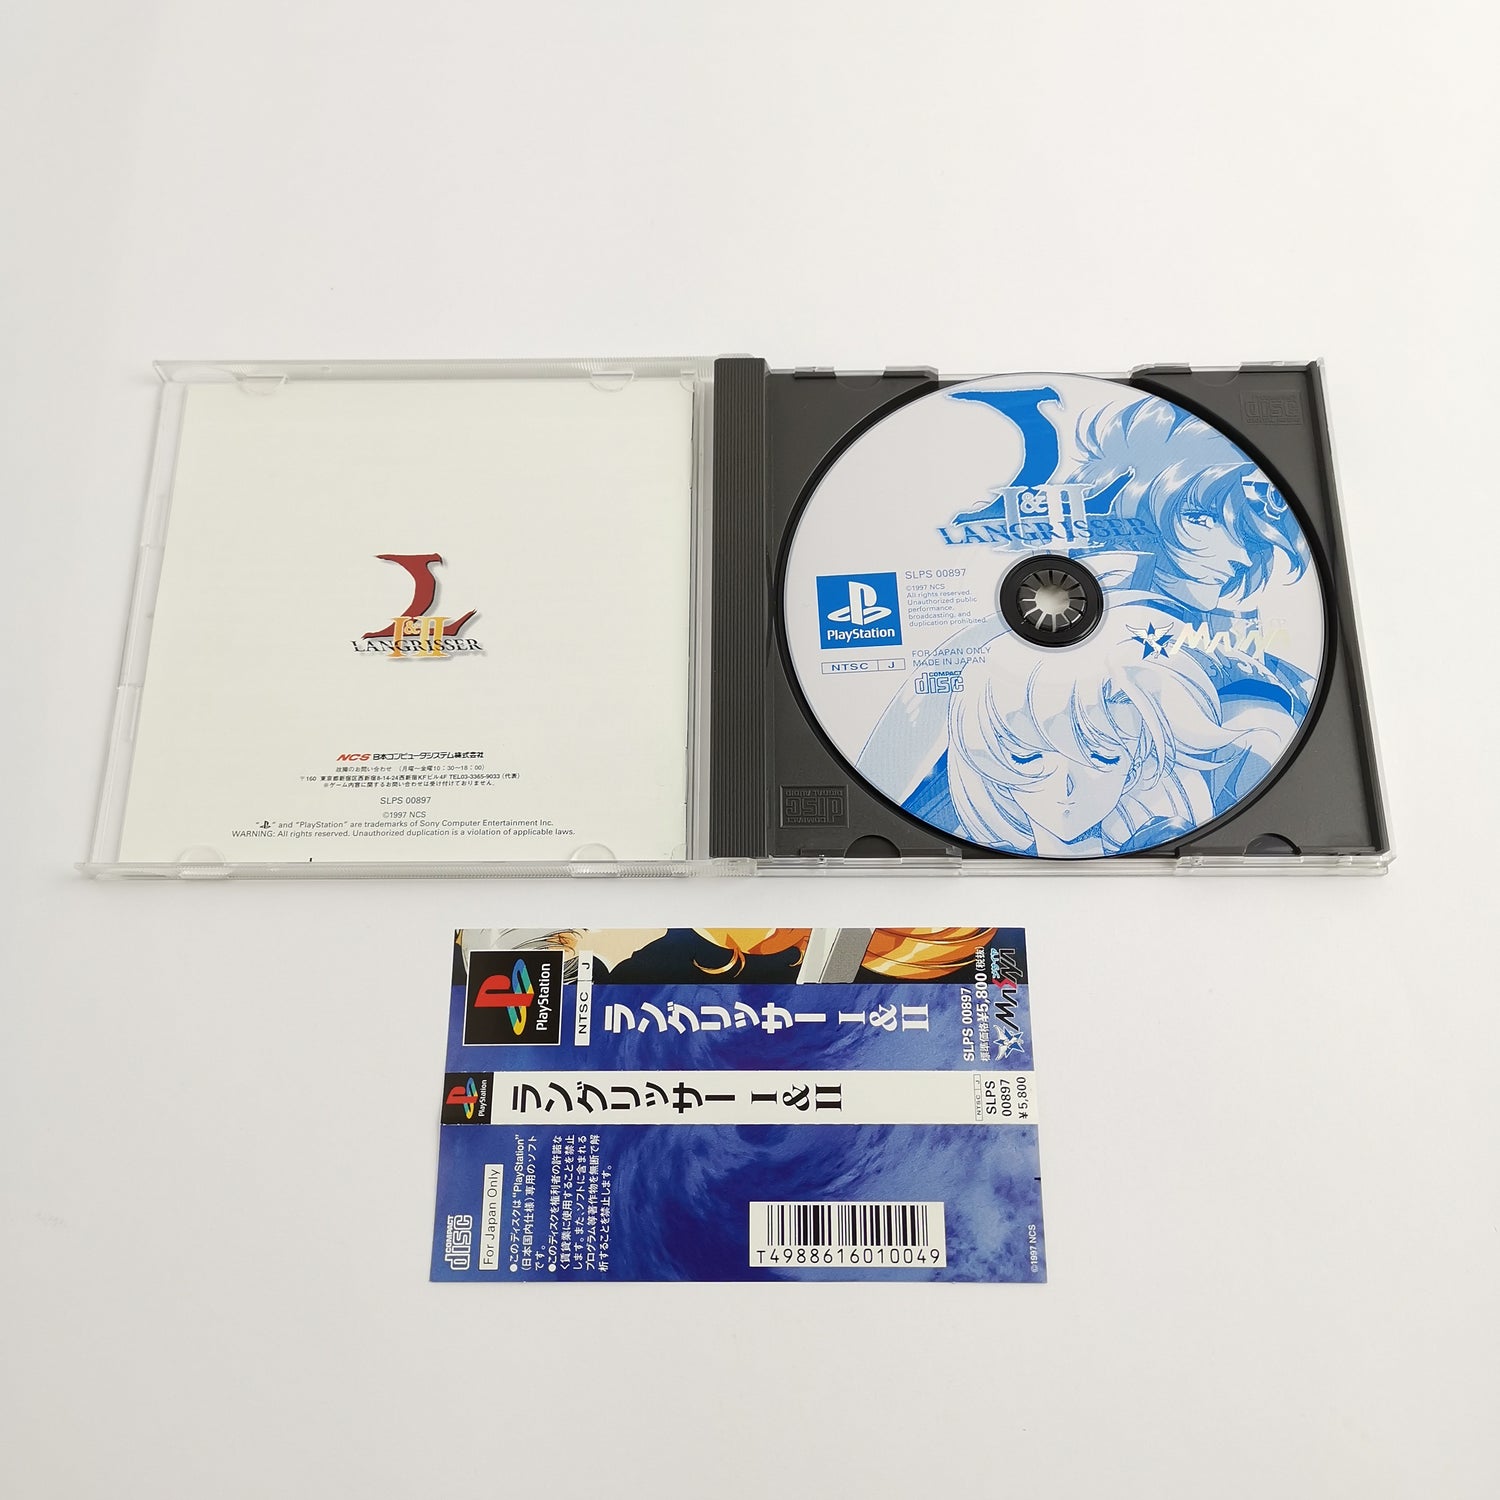 Sony Playstation 1 Game: Langrisser I & II | PS1 PSX - NTSC-J Japan